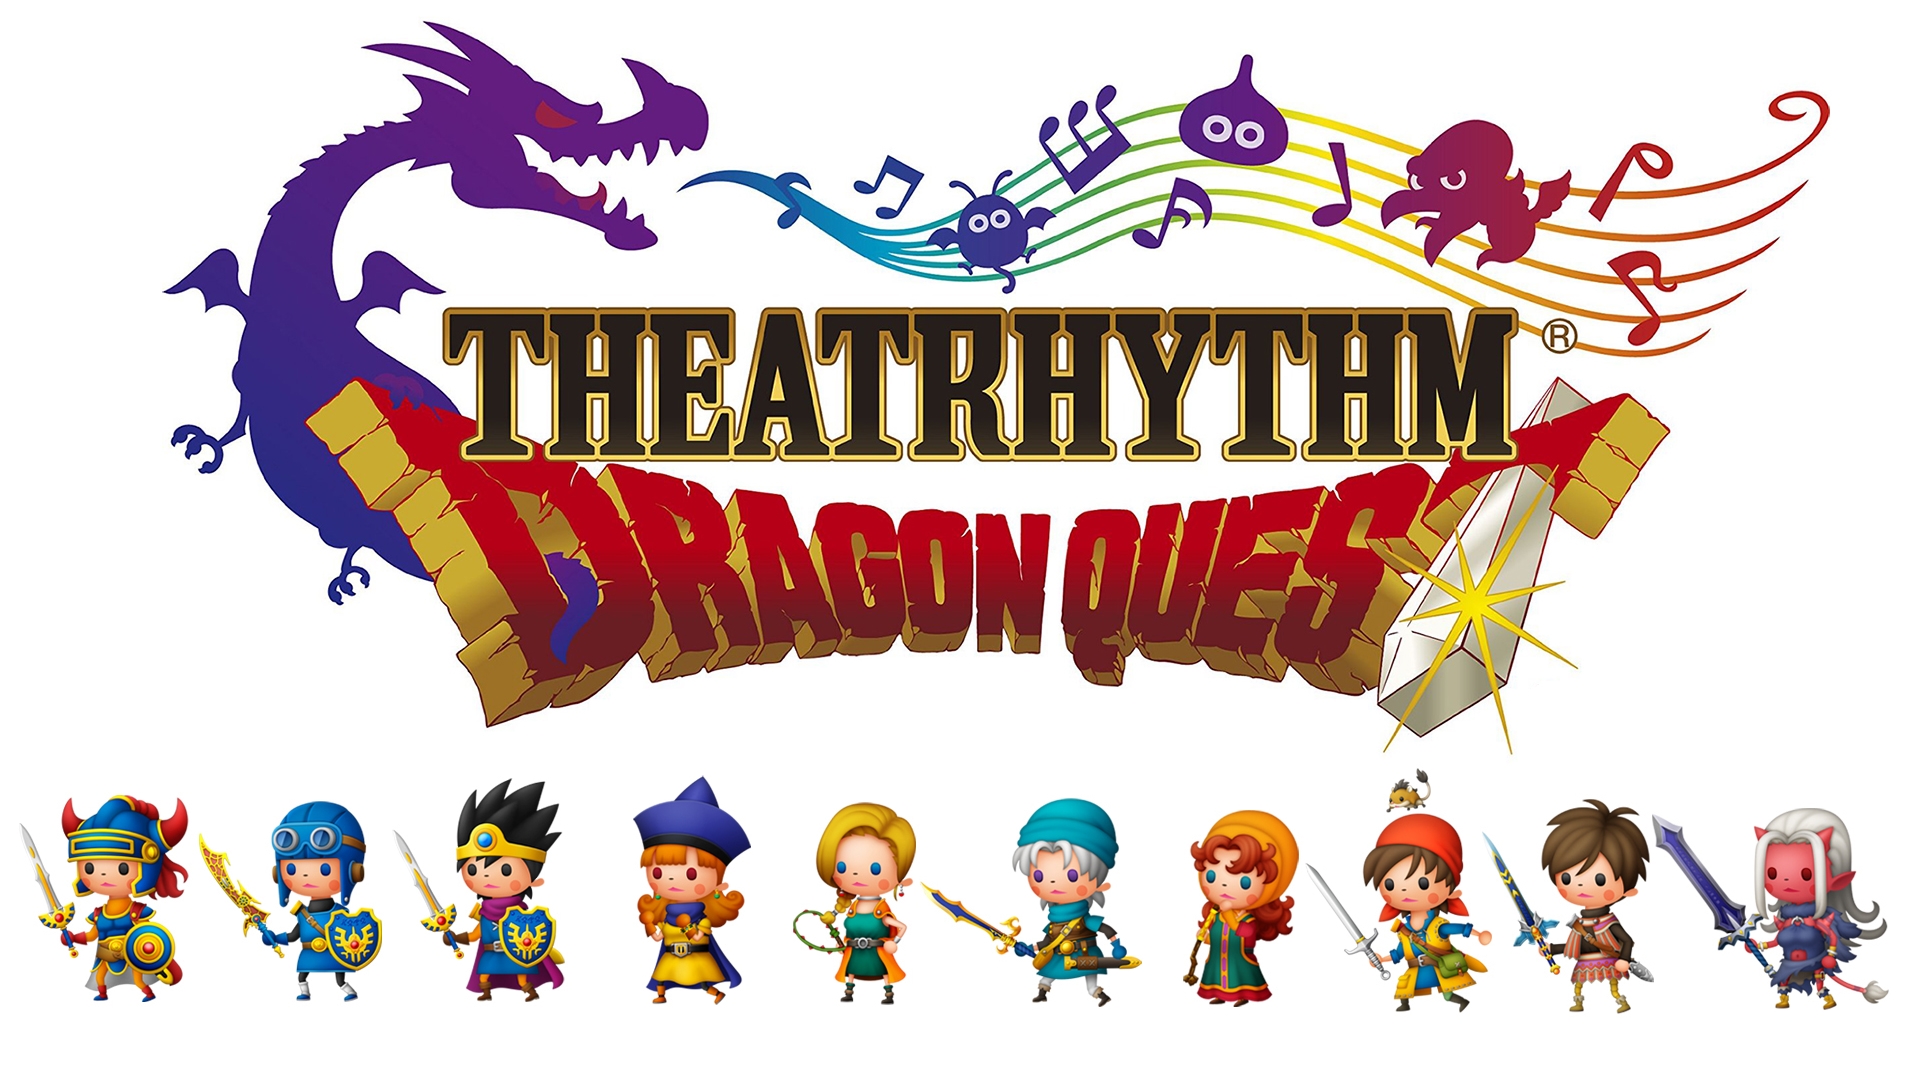 Theatrhythm Dragon Quest